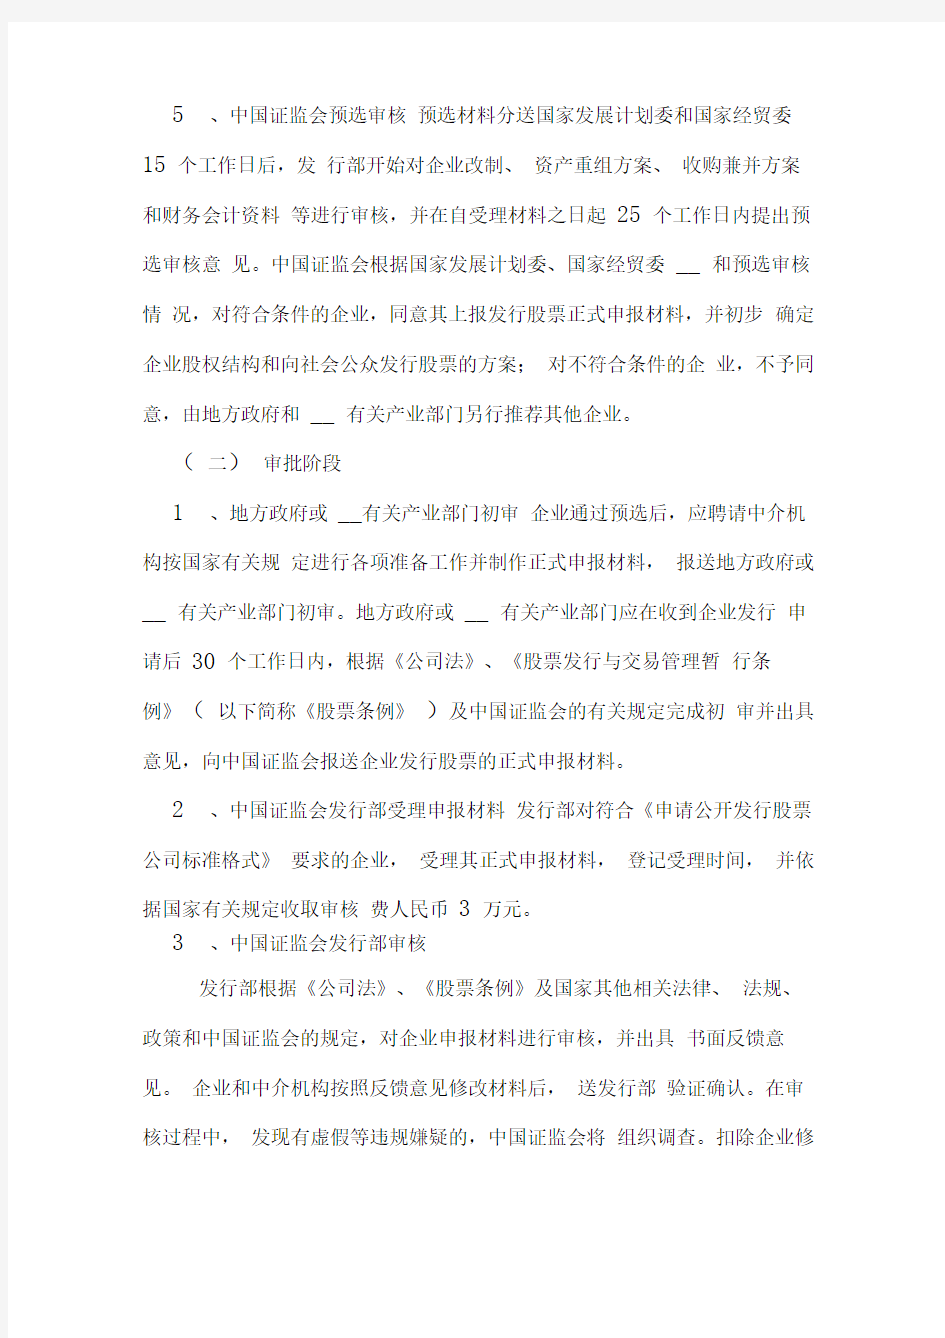 中国证监会股票发行审核工作程序